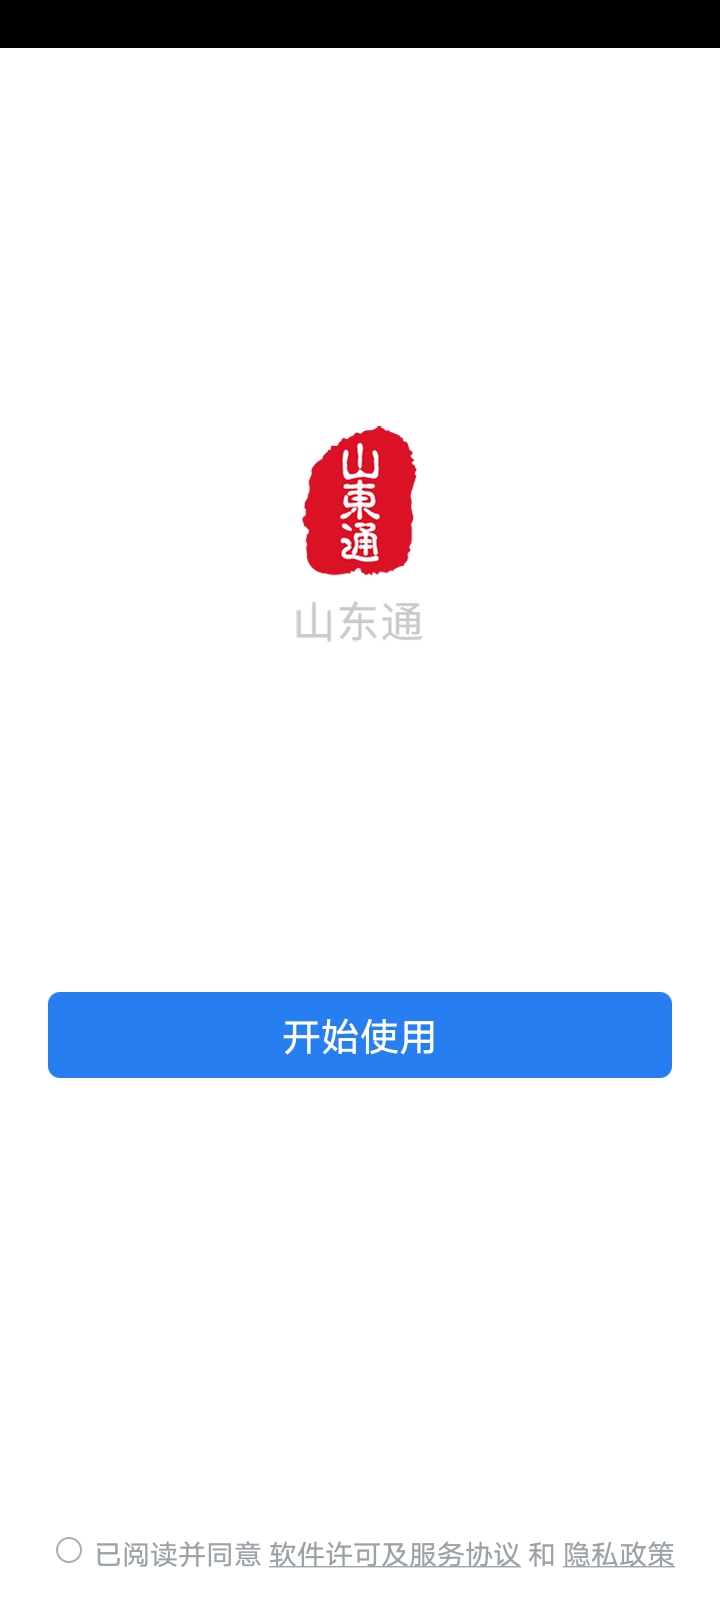 山东通app(WeCom)图1